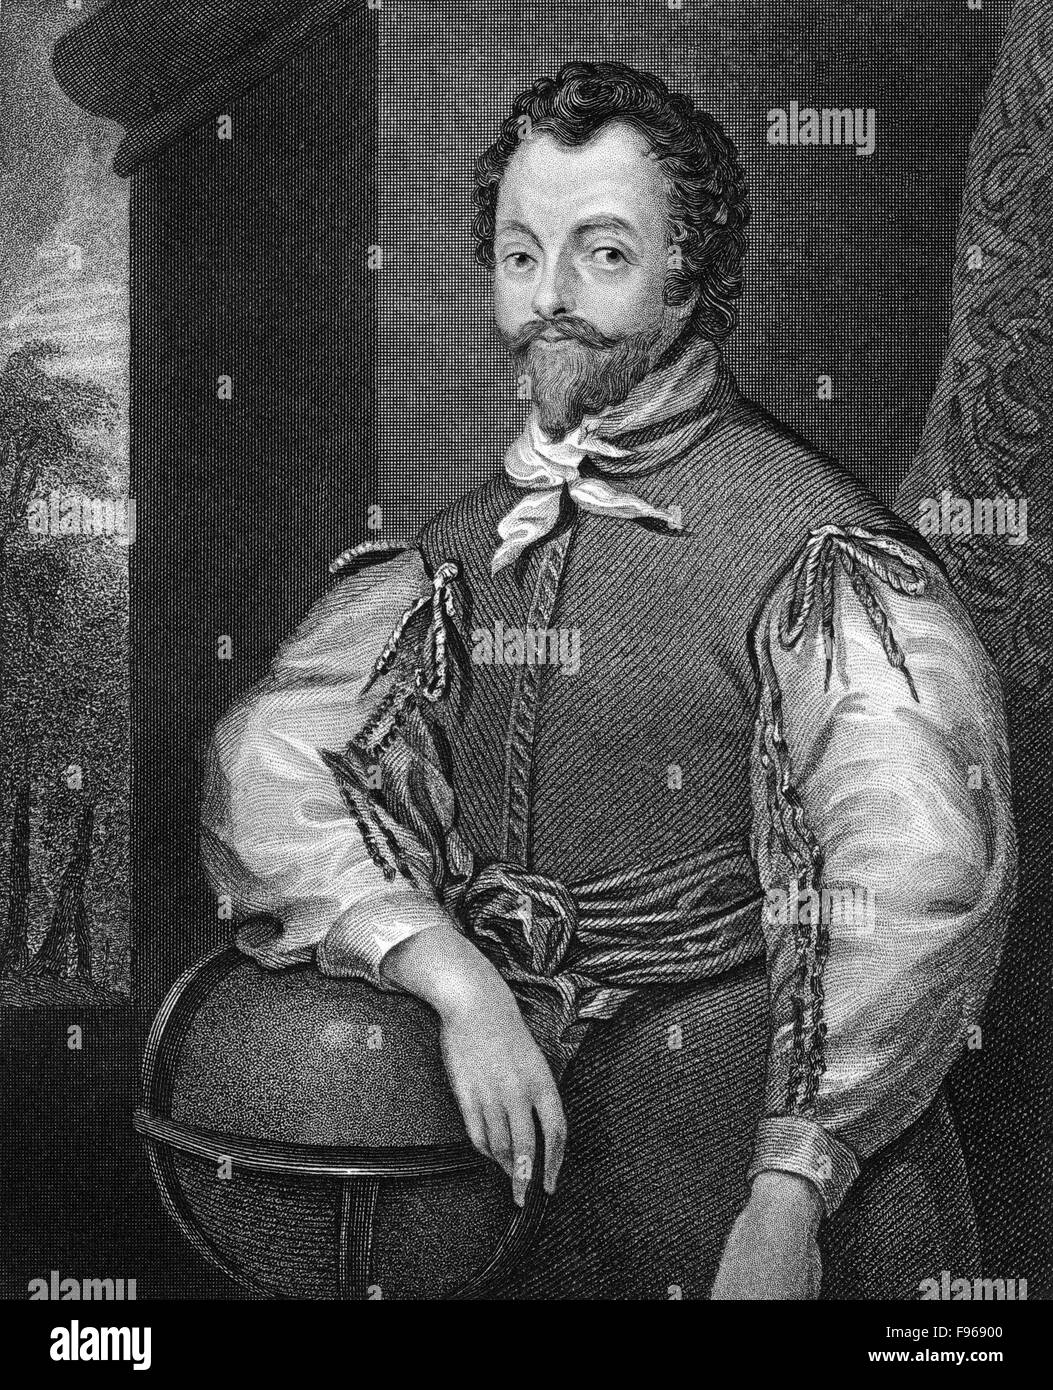 Sir Francis Drake, vers 1540 - 1596, un marin anglais, pirate, explorateur, Vice-amiral et le premier britannique, Anglais Banque D'Images